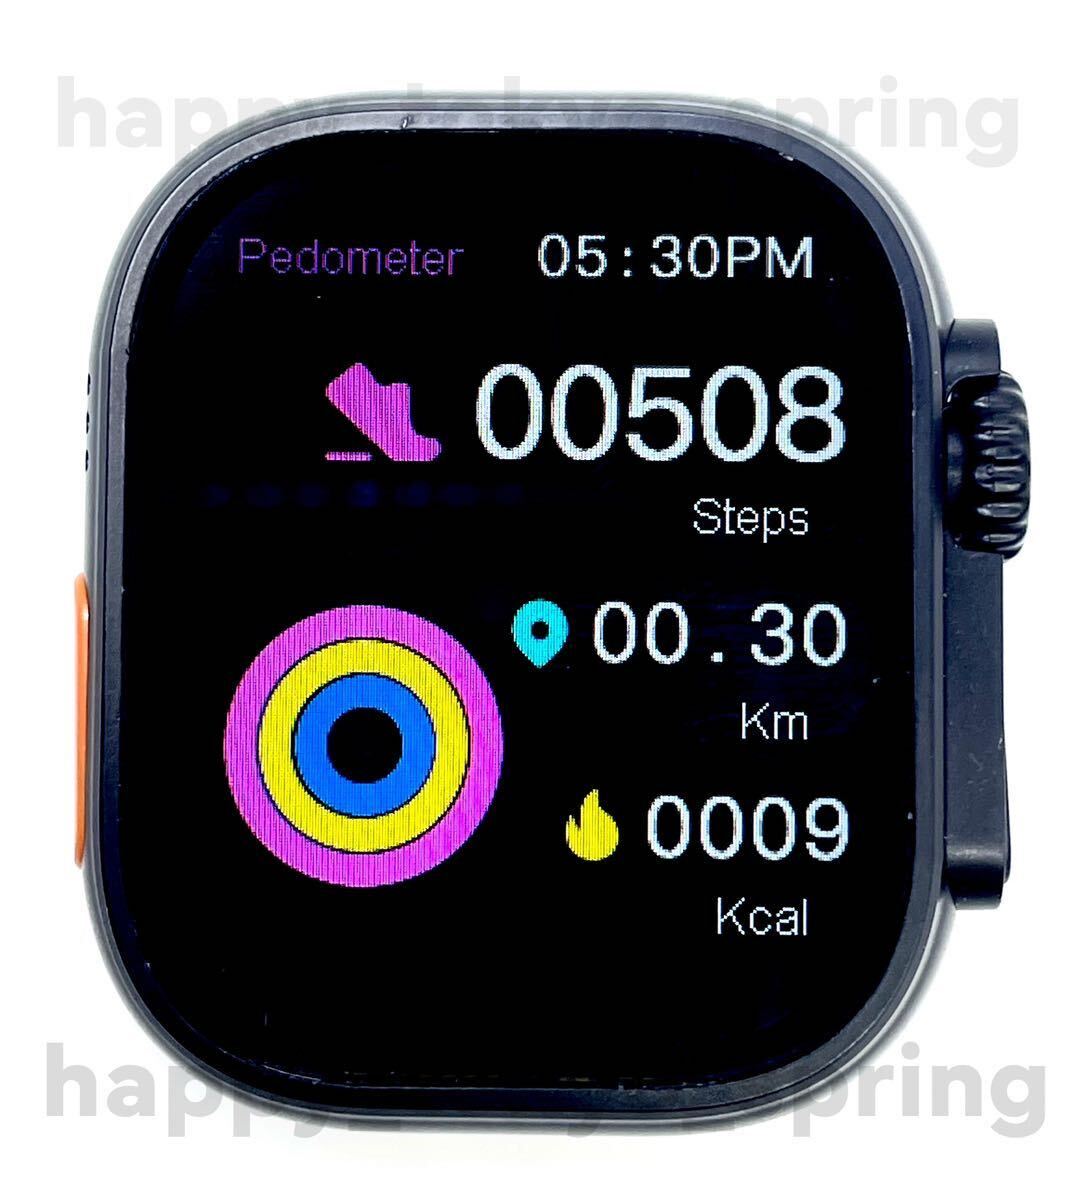  новый товар Watch9 Pro Max большой экран частота 7 вид смарт-часы телефонный разговор музыка многофункциональный здоровье . средний кислород кровяное давление Apple Watch9 товар-заменитель.